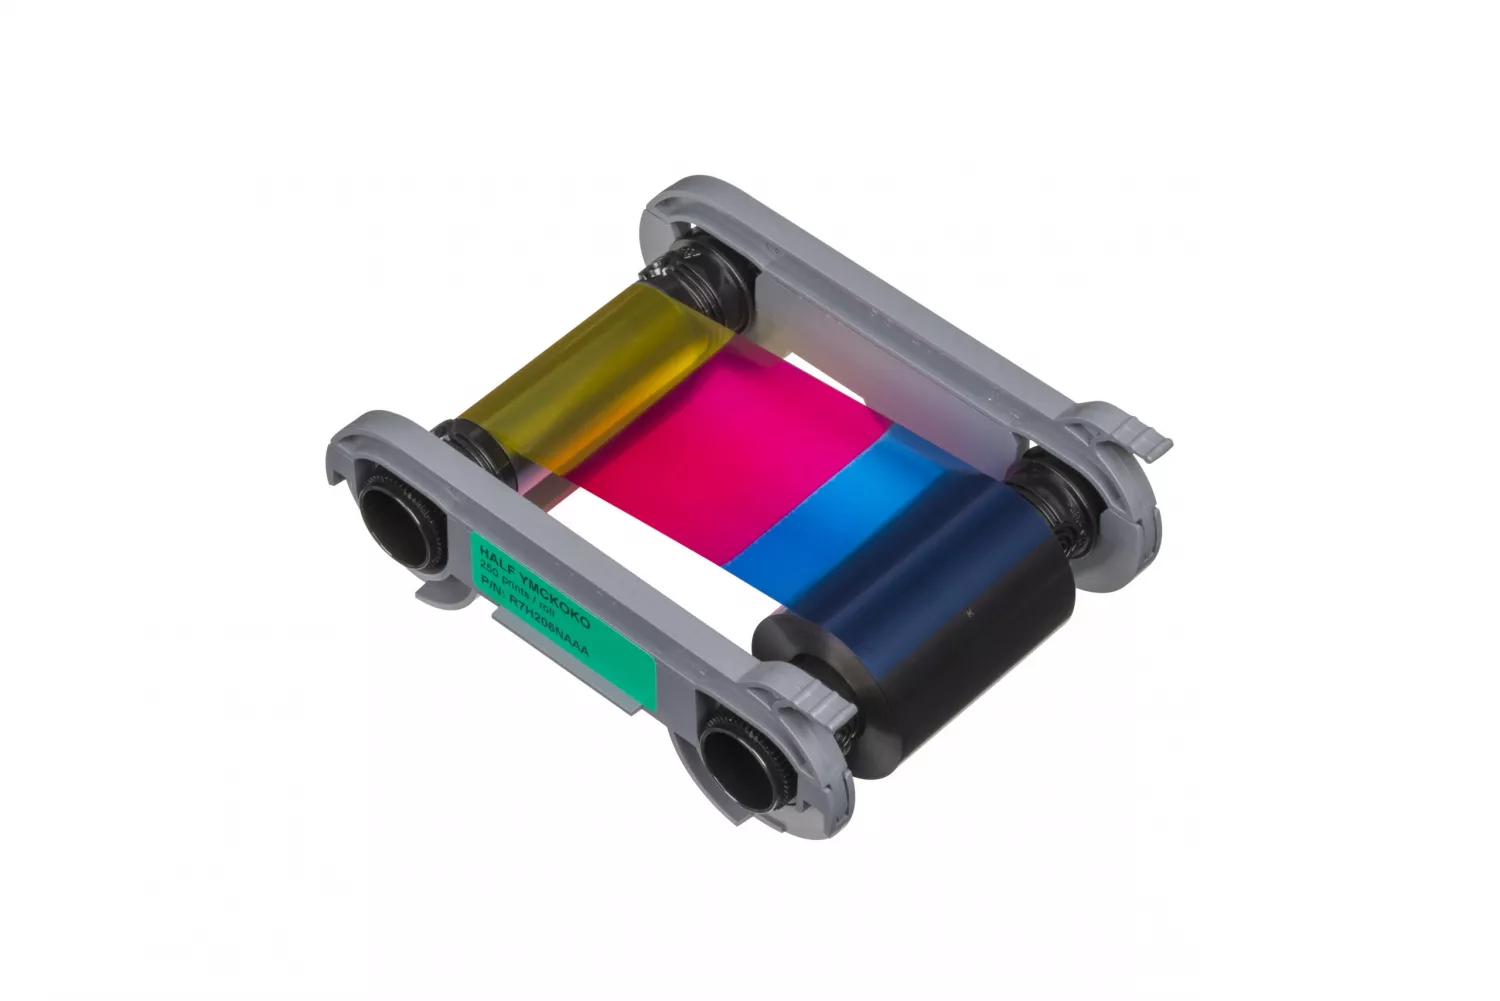 Colorful Film for card printer Evolis Primacy 2